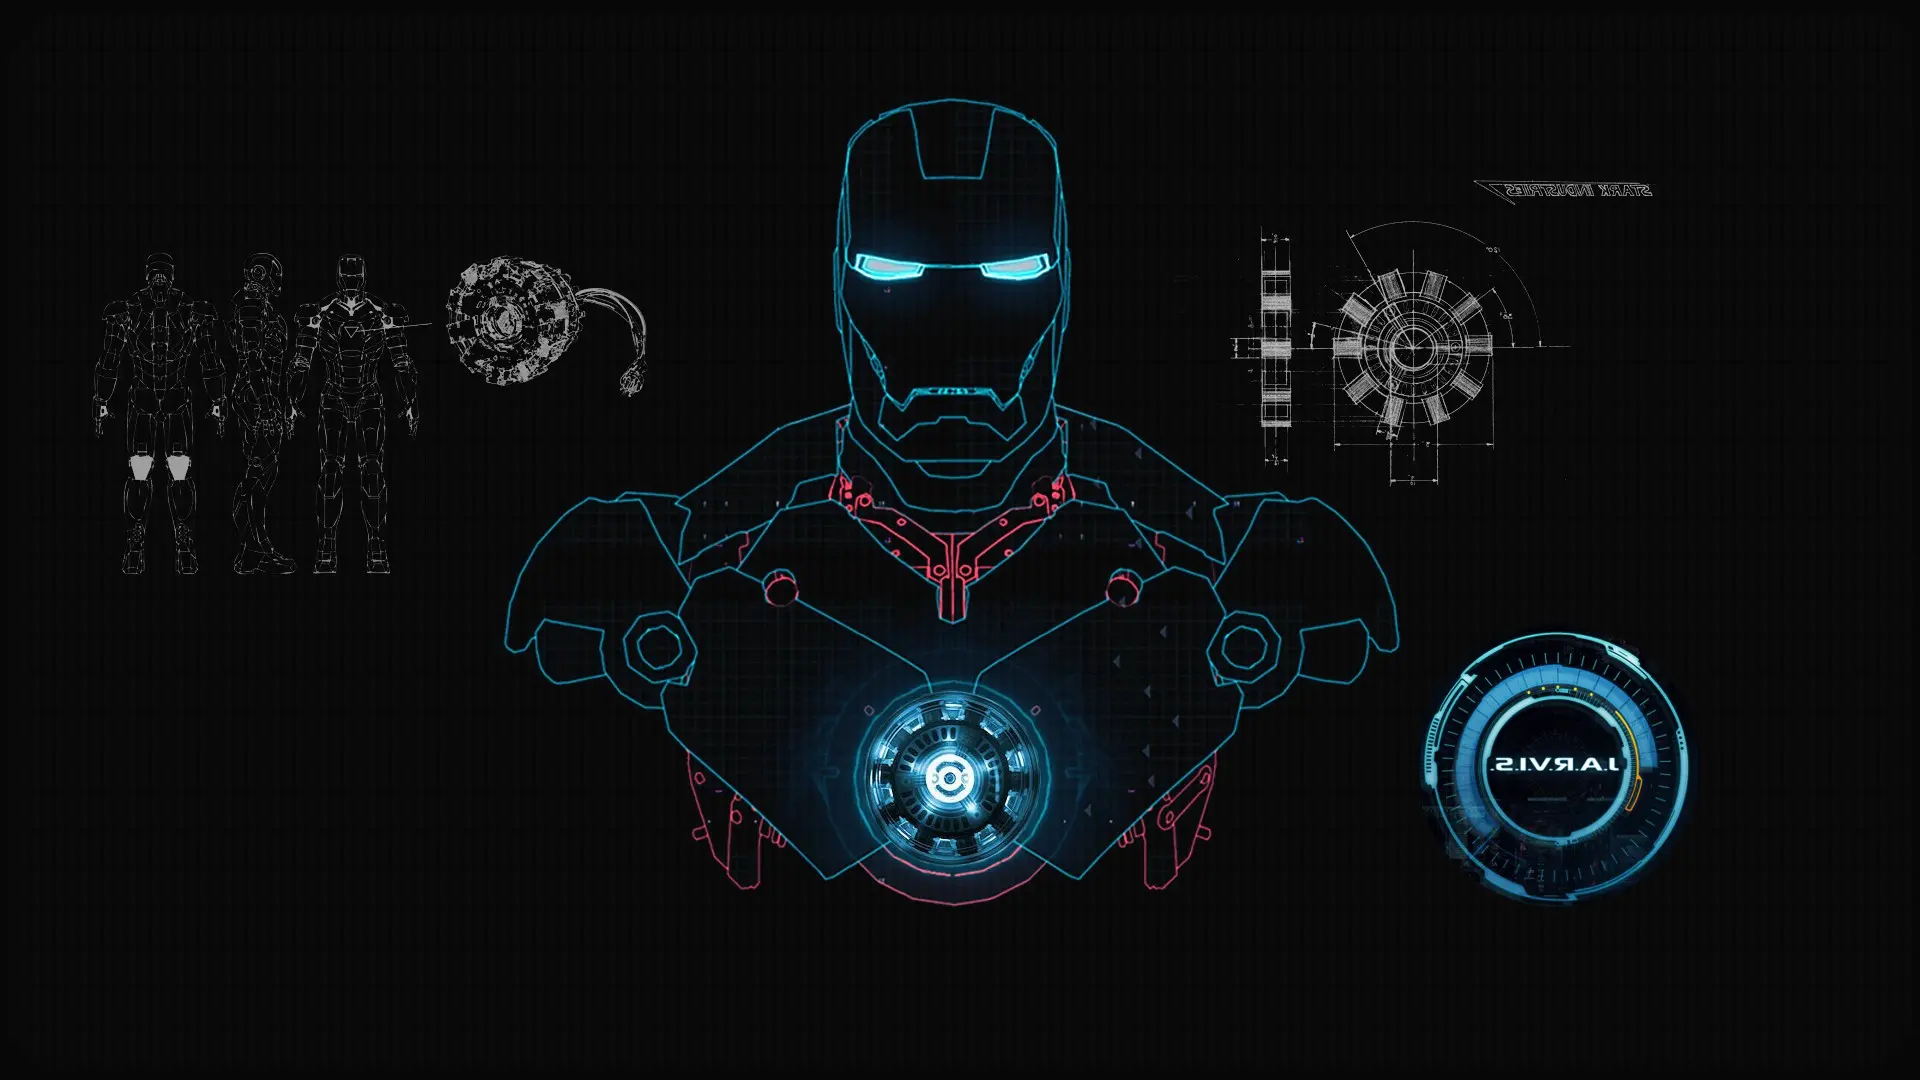 60 wallpaper Iron Man yang sangat tajam untuk ponsel dan komputer pada tahun 2023